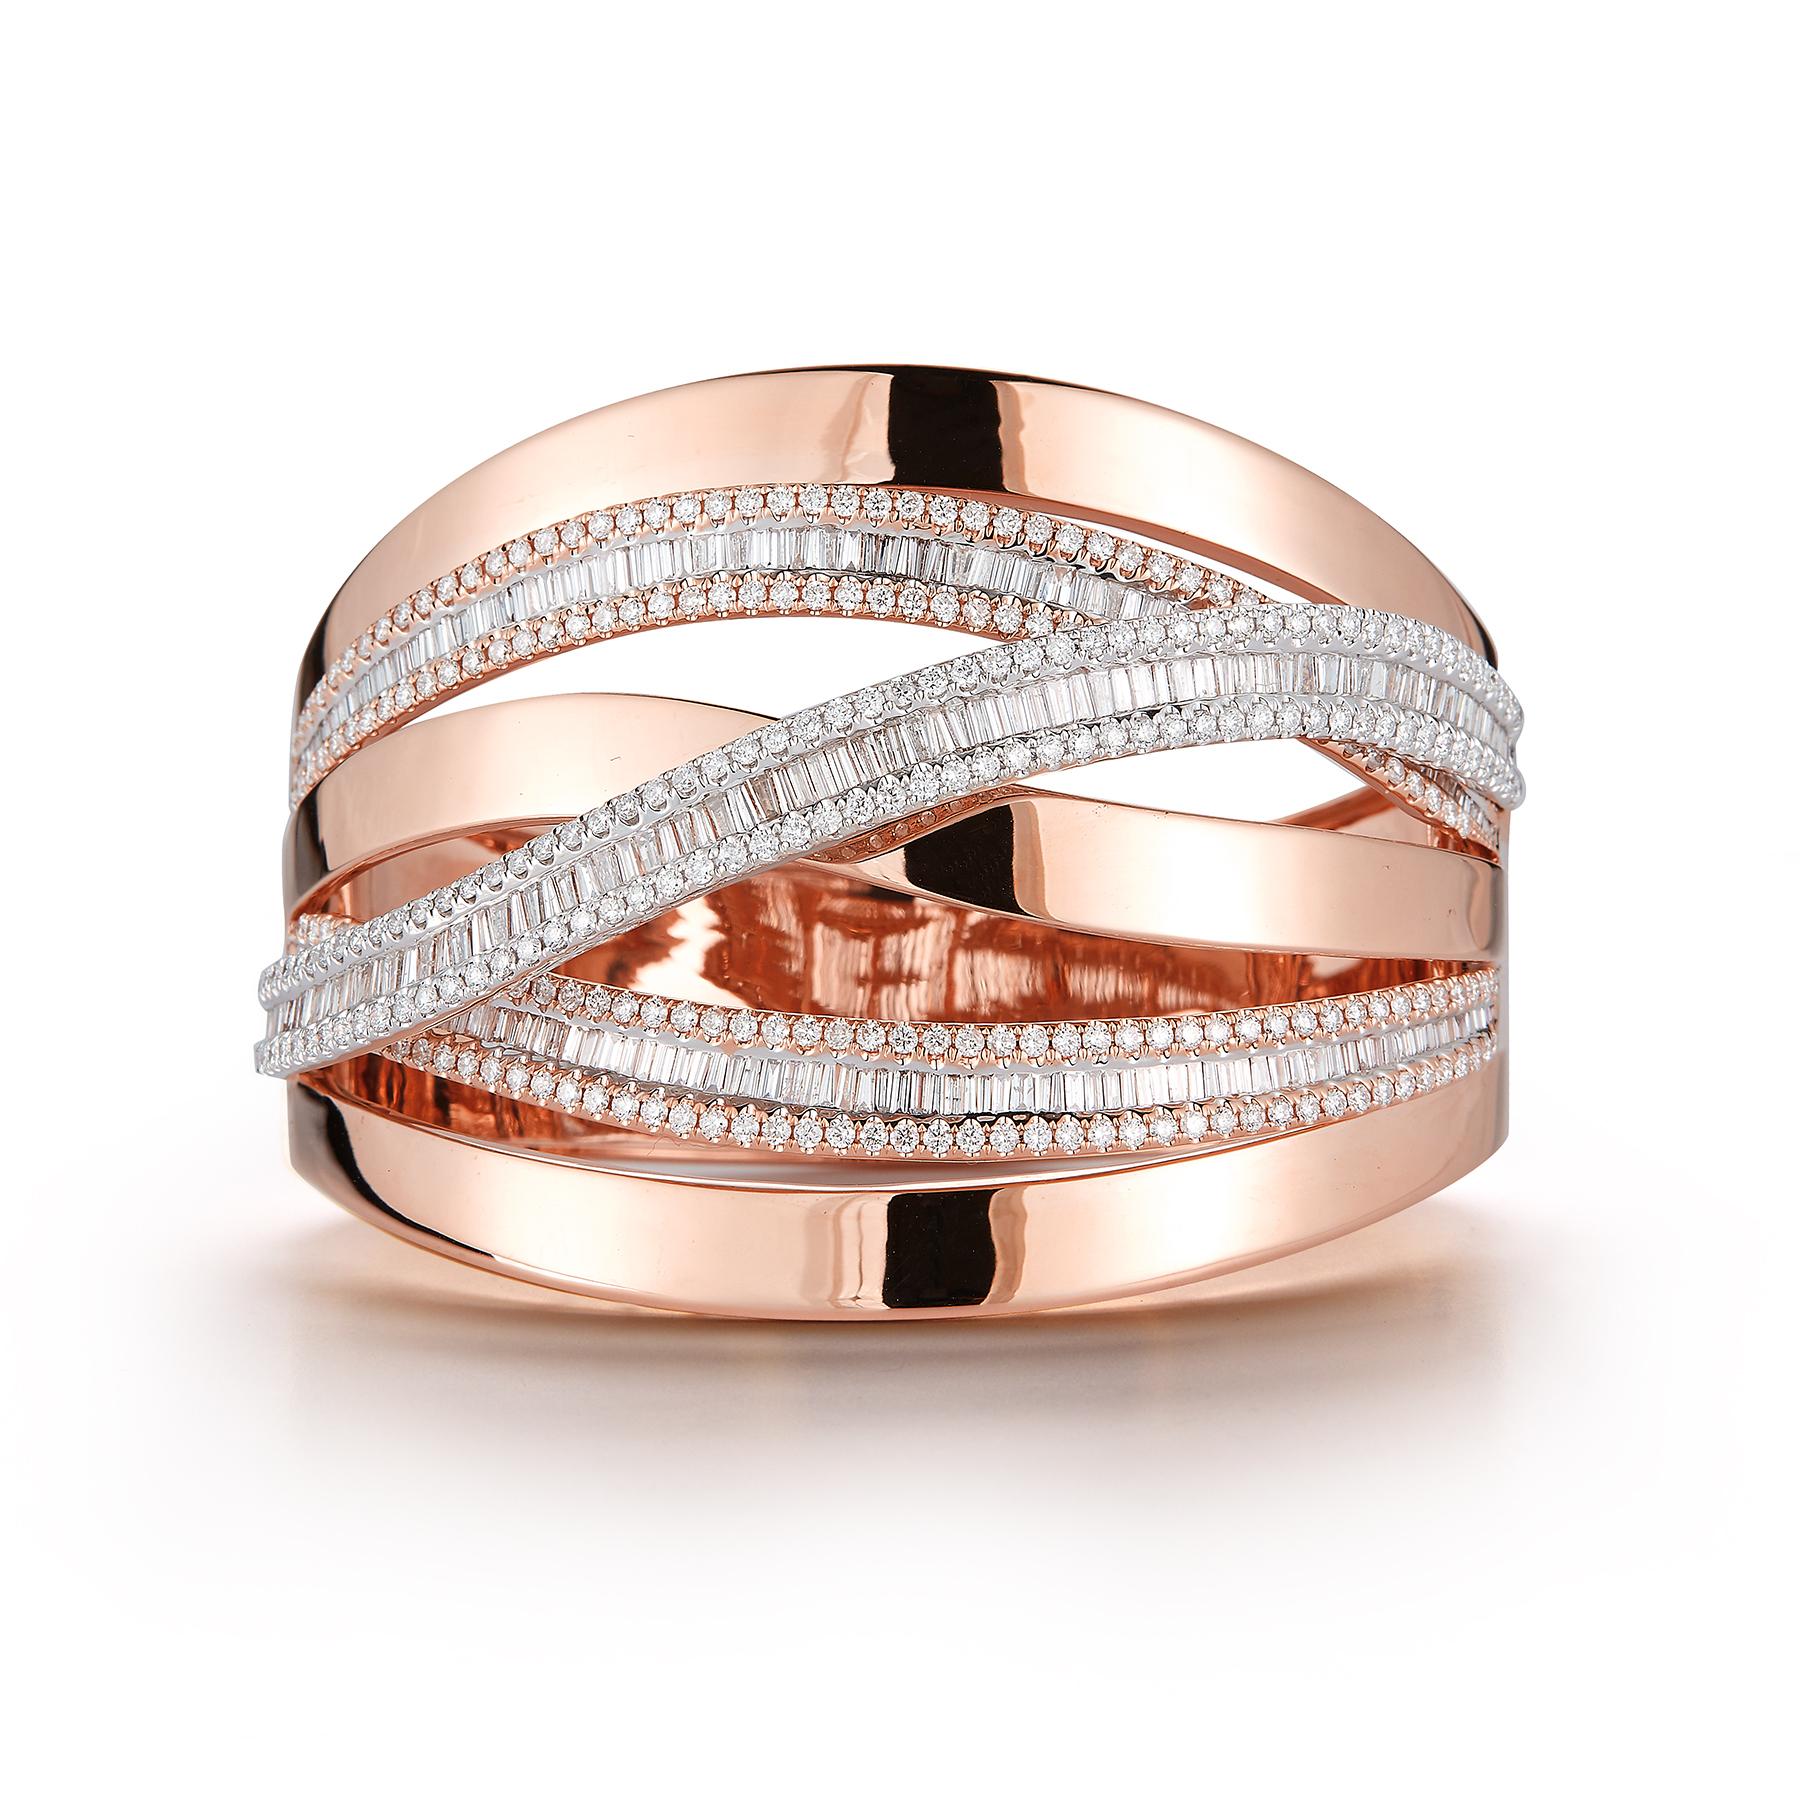 Superbe bracelet-bracelet en or rose 18 carats, de style manchette unique, comportant 3 rangées d'or rose lisse entrelacées de 3 rangées de 252 diamants blancs éblouissants, ronds et baguettes, totalisant 7,30 carats. 